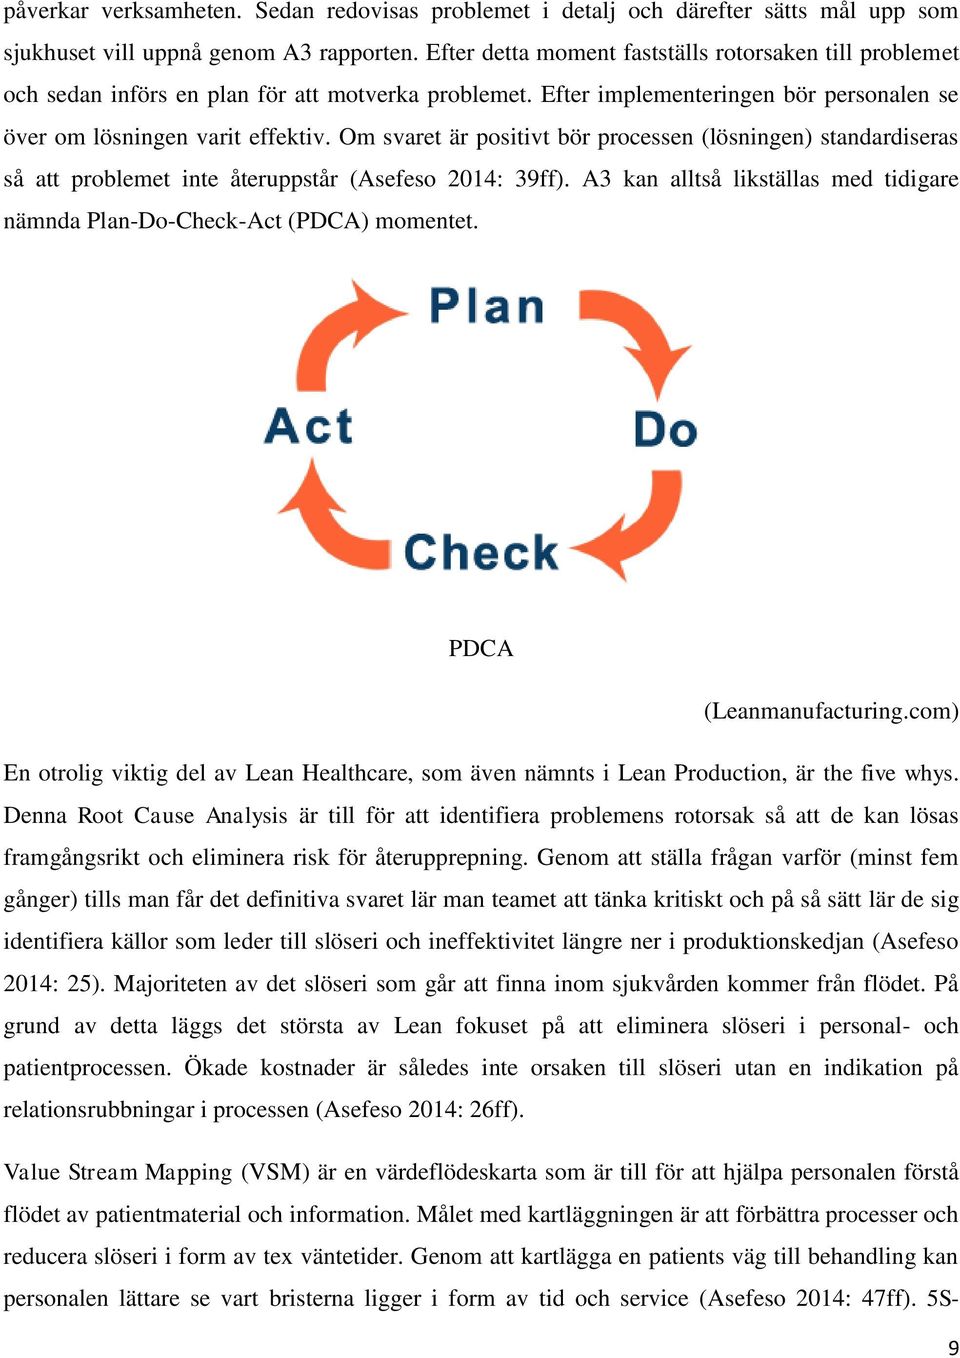 Om svaret är positivt bör processen (lösningen) standardiseras så att problemet inte återuppstår (Asefeso 2014: 39ff). A3 kan alltså likställas med tidigare nämnda Plan-Do-Check-Act (PDCA) momentet.